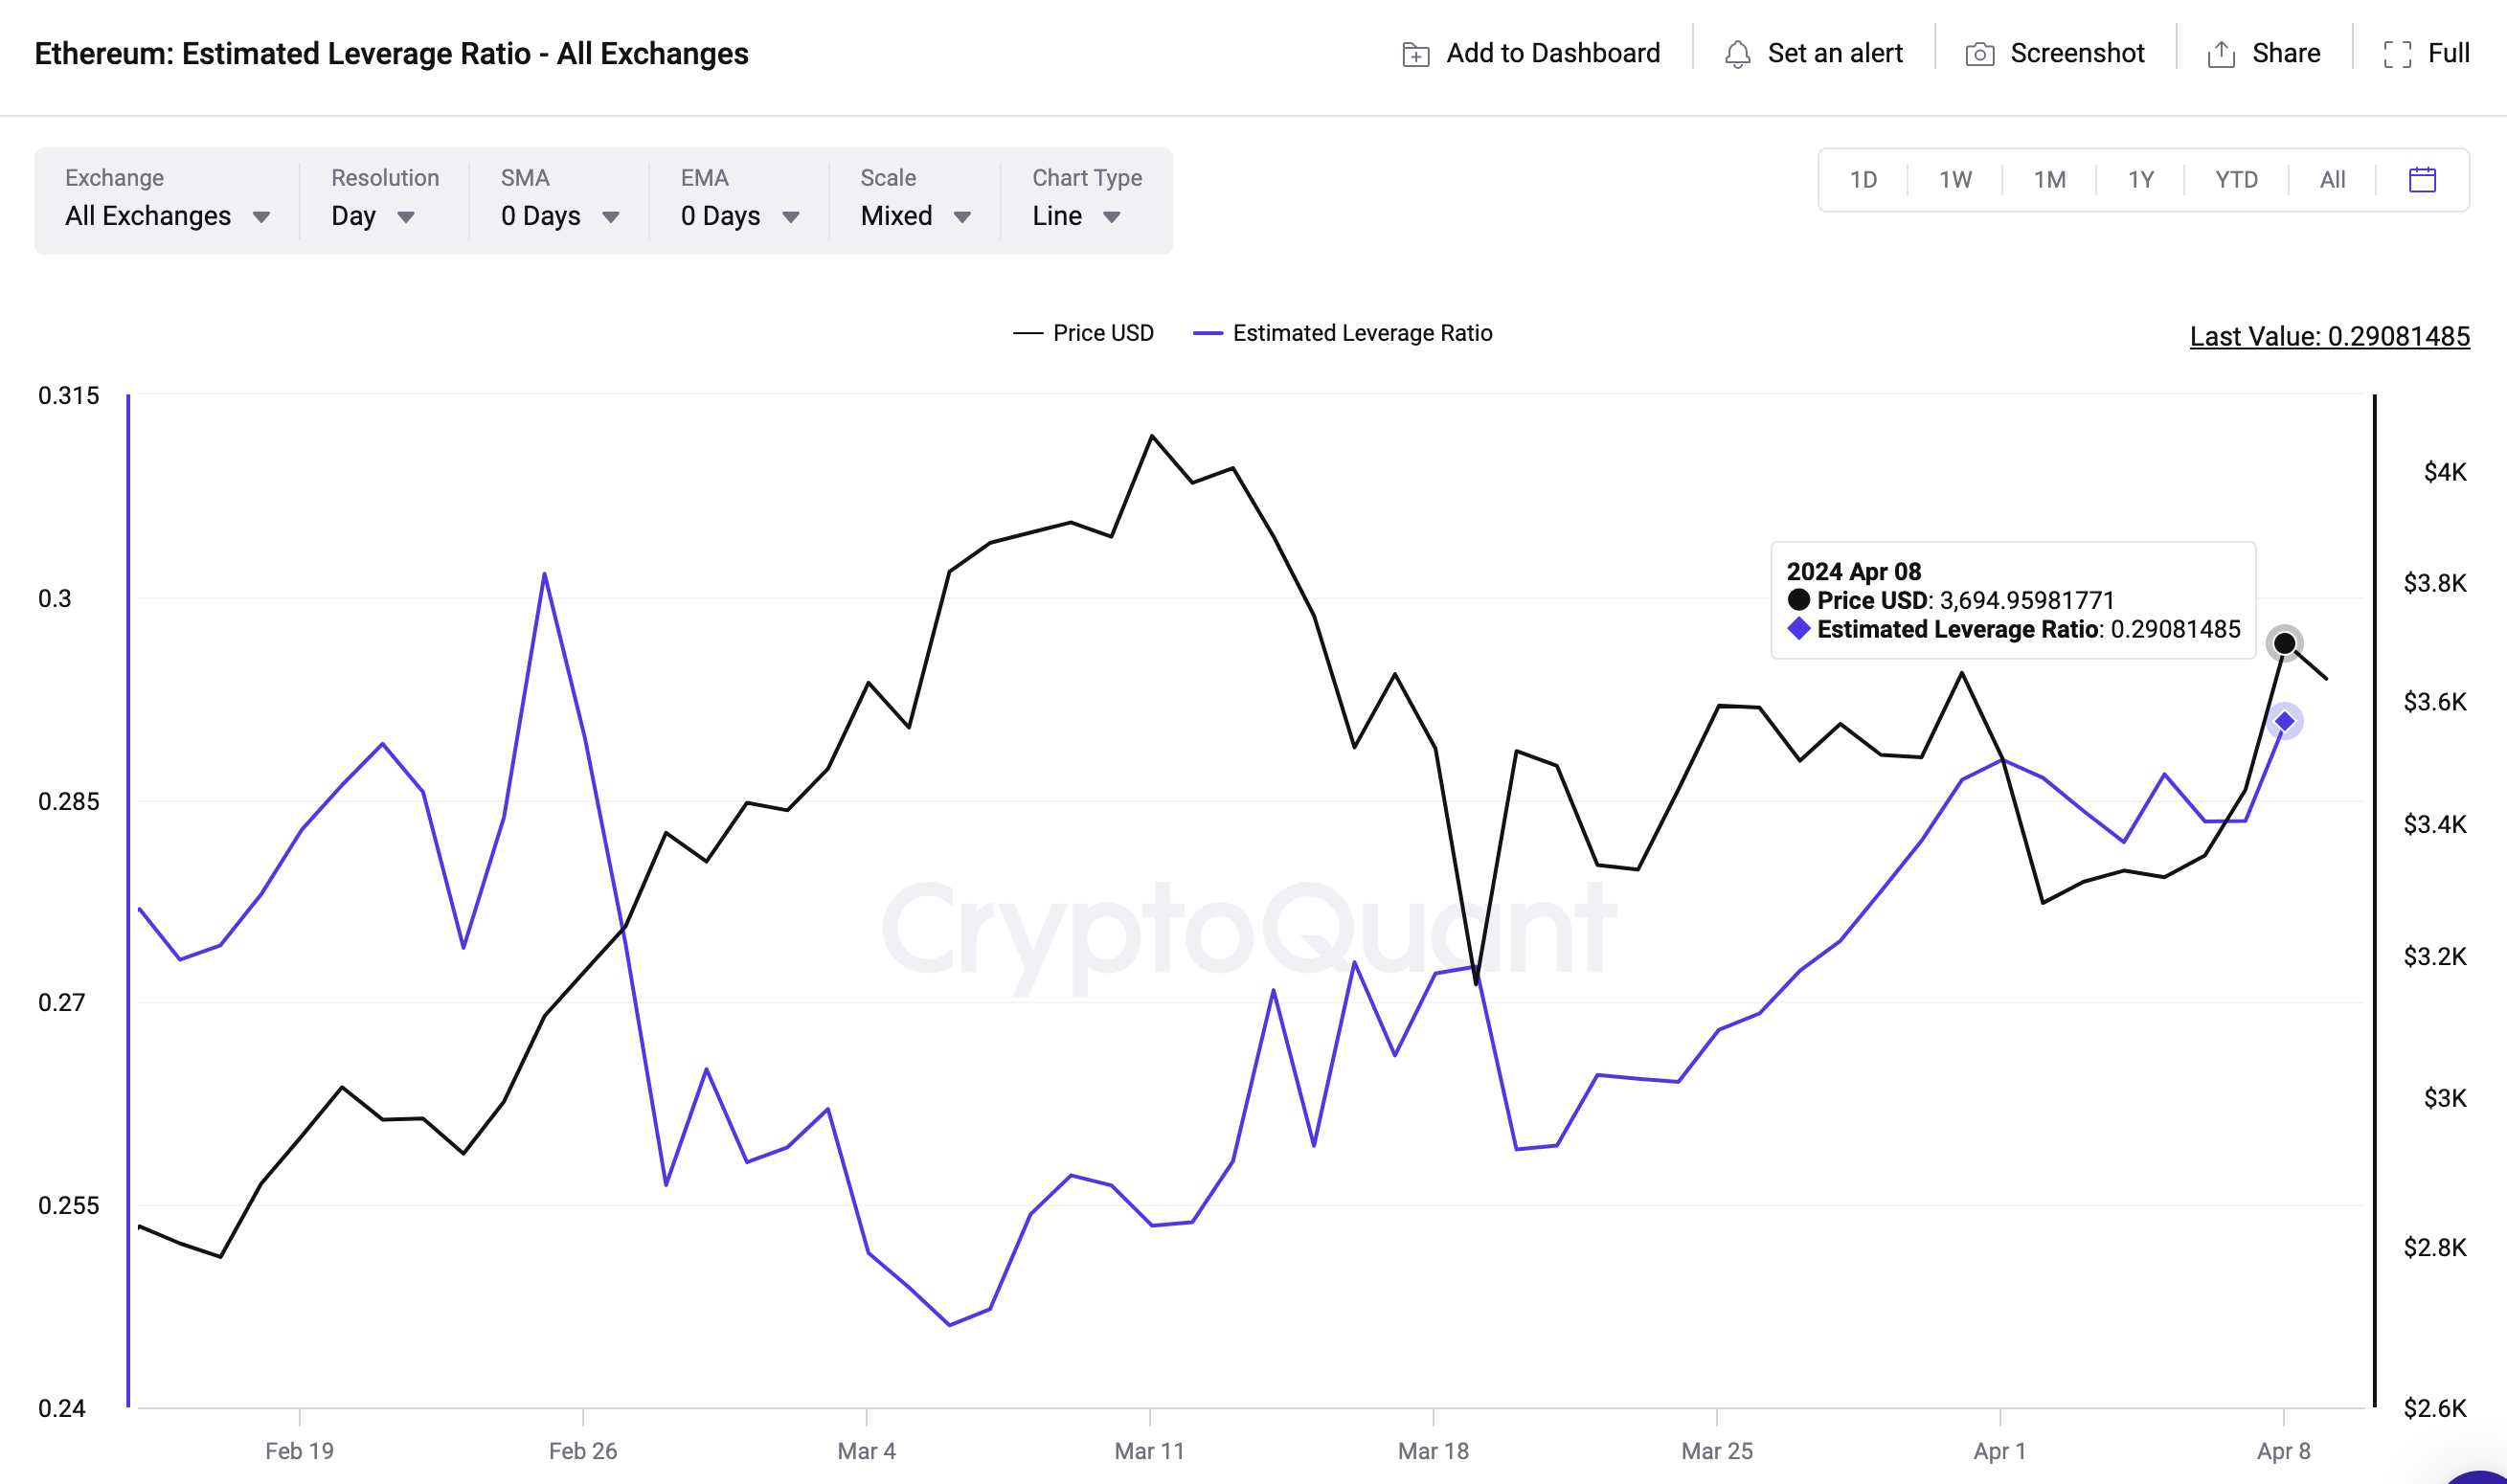 Ethereum Leverage Ratio vs. Price | Source: CryptoQuant